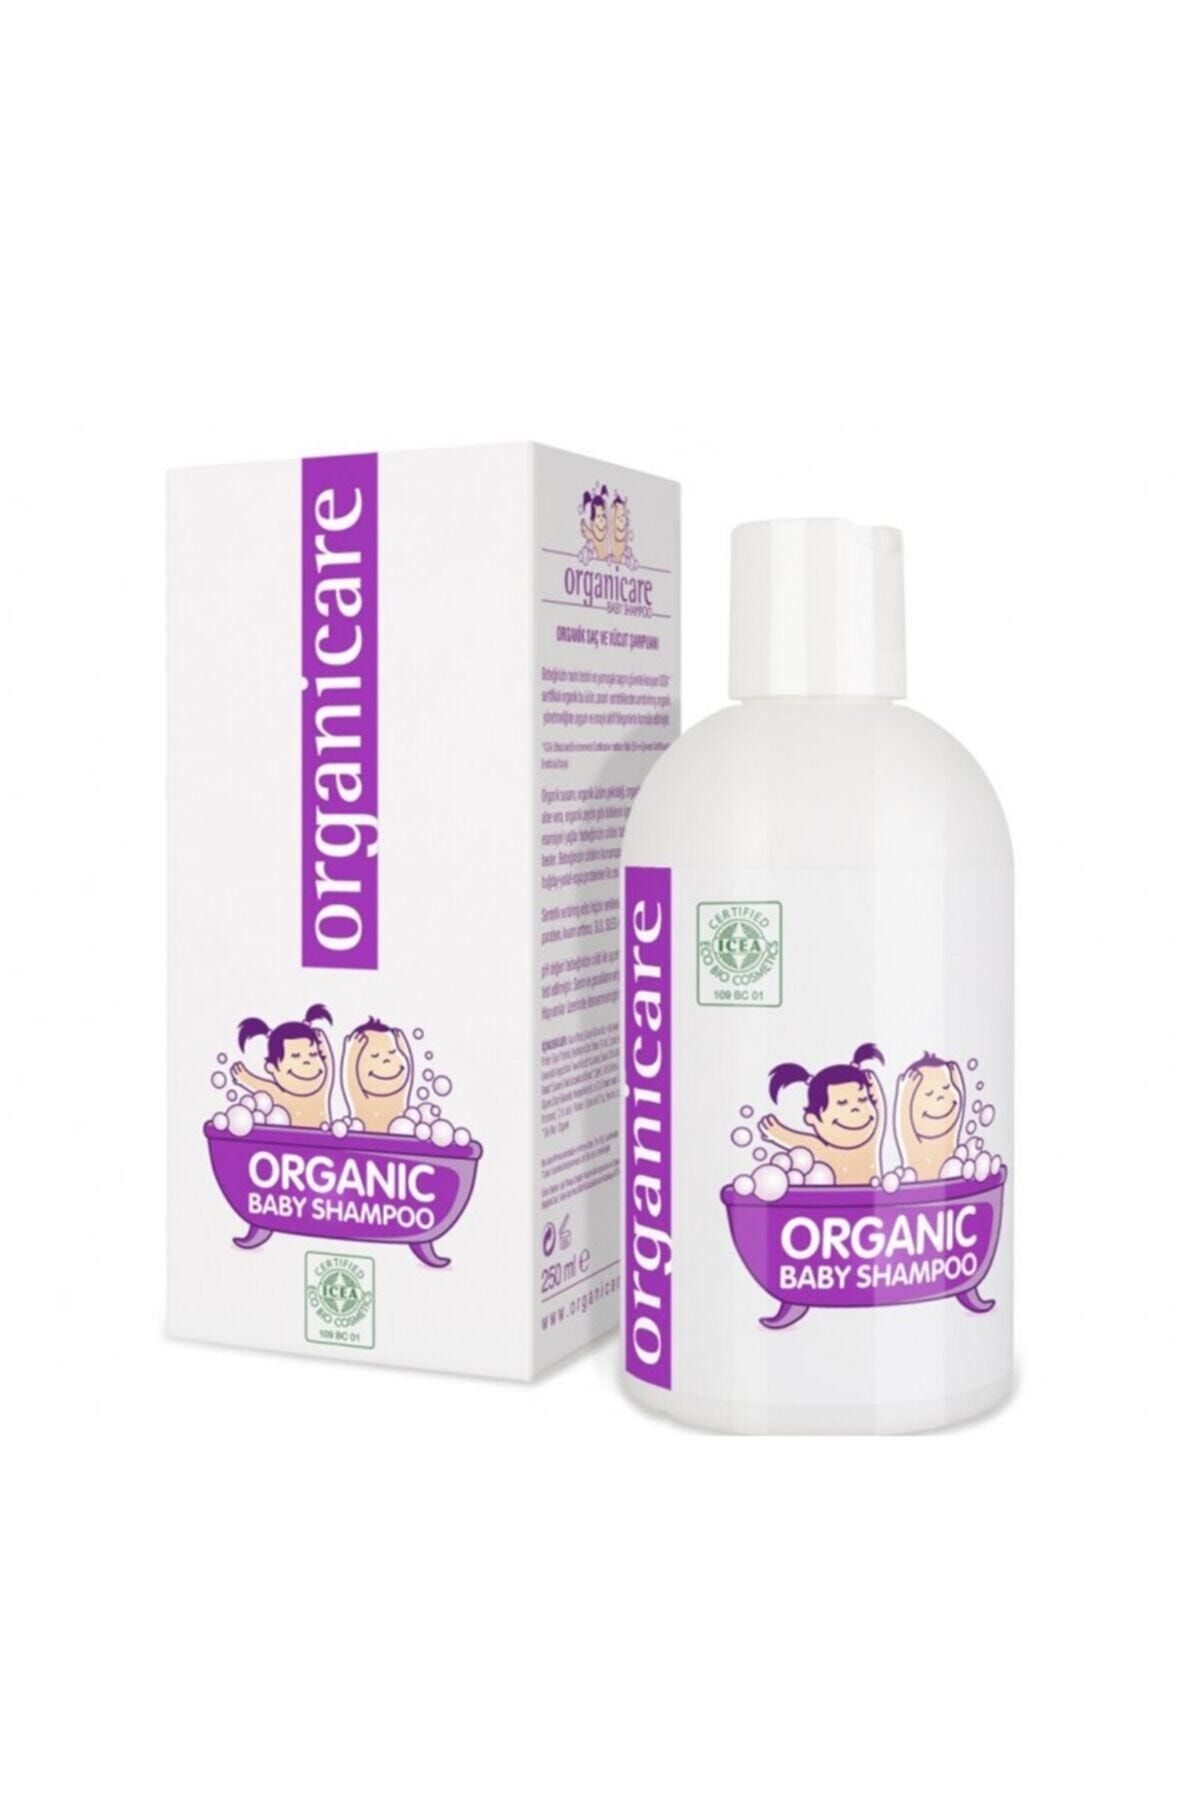 Organicum Organicare Organik Bebek Şampuanı 250ml